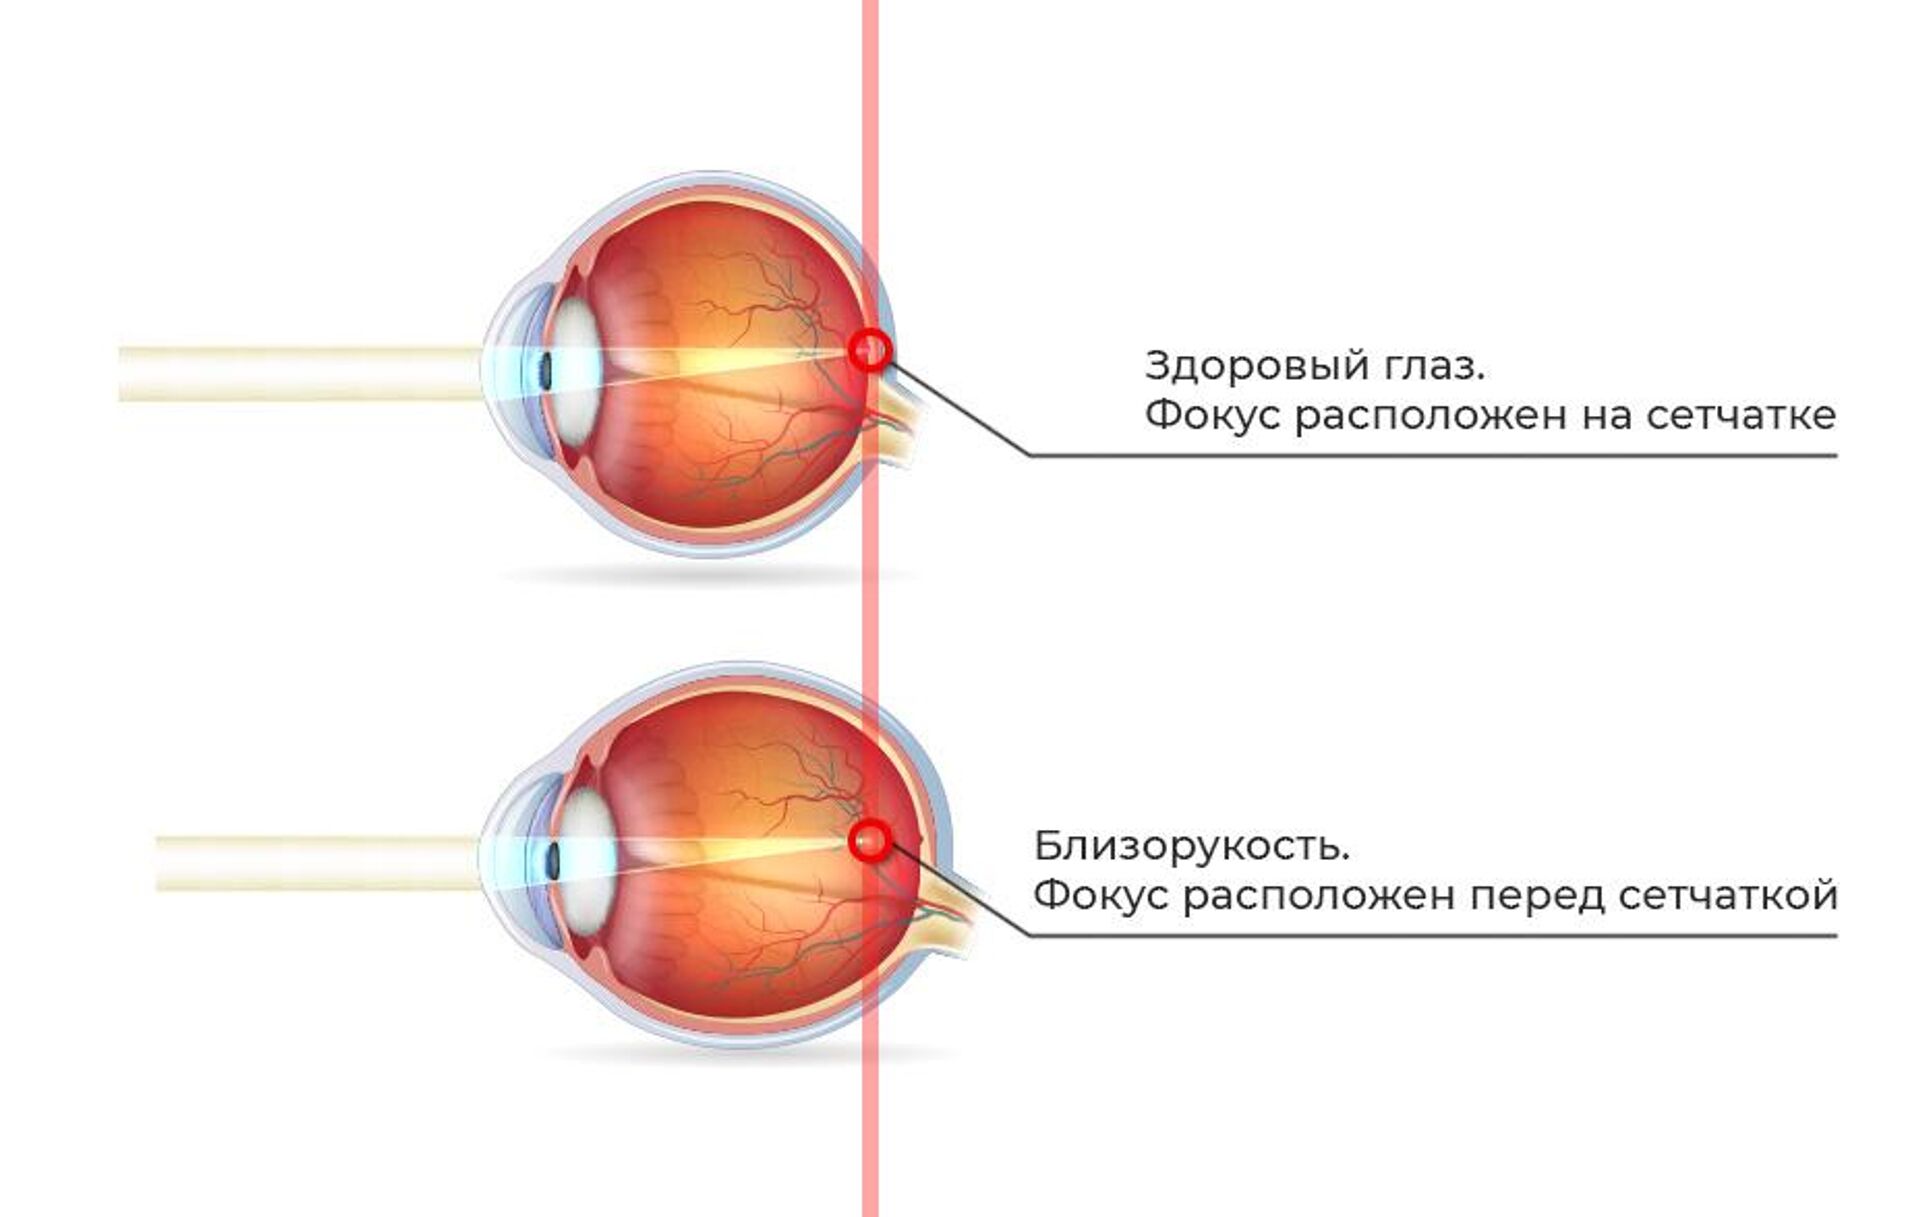 1 это нормальное зрение. Близорукость (истинная и ложная формы патологии). Миопия фокус перед сетчаткой. Близорукость глазное яблоко удлиняется. Удлиненное глазное яблоко при близорукости.